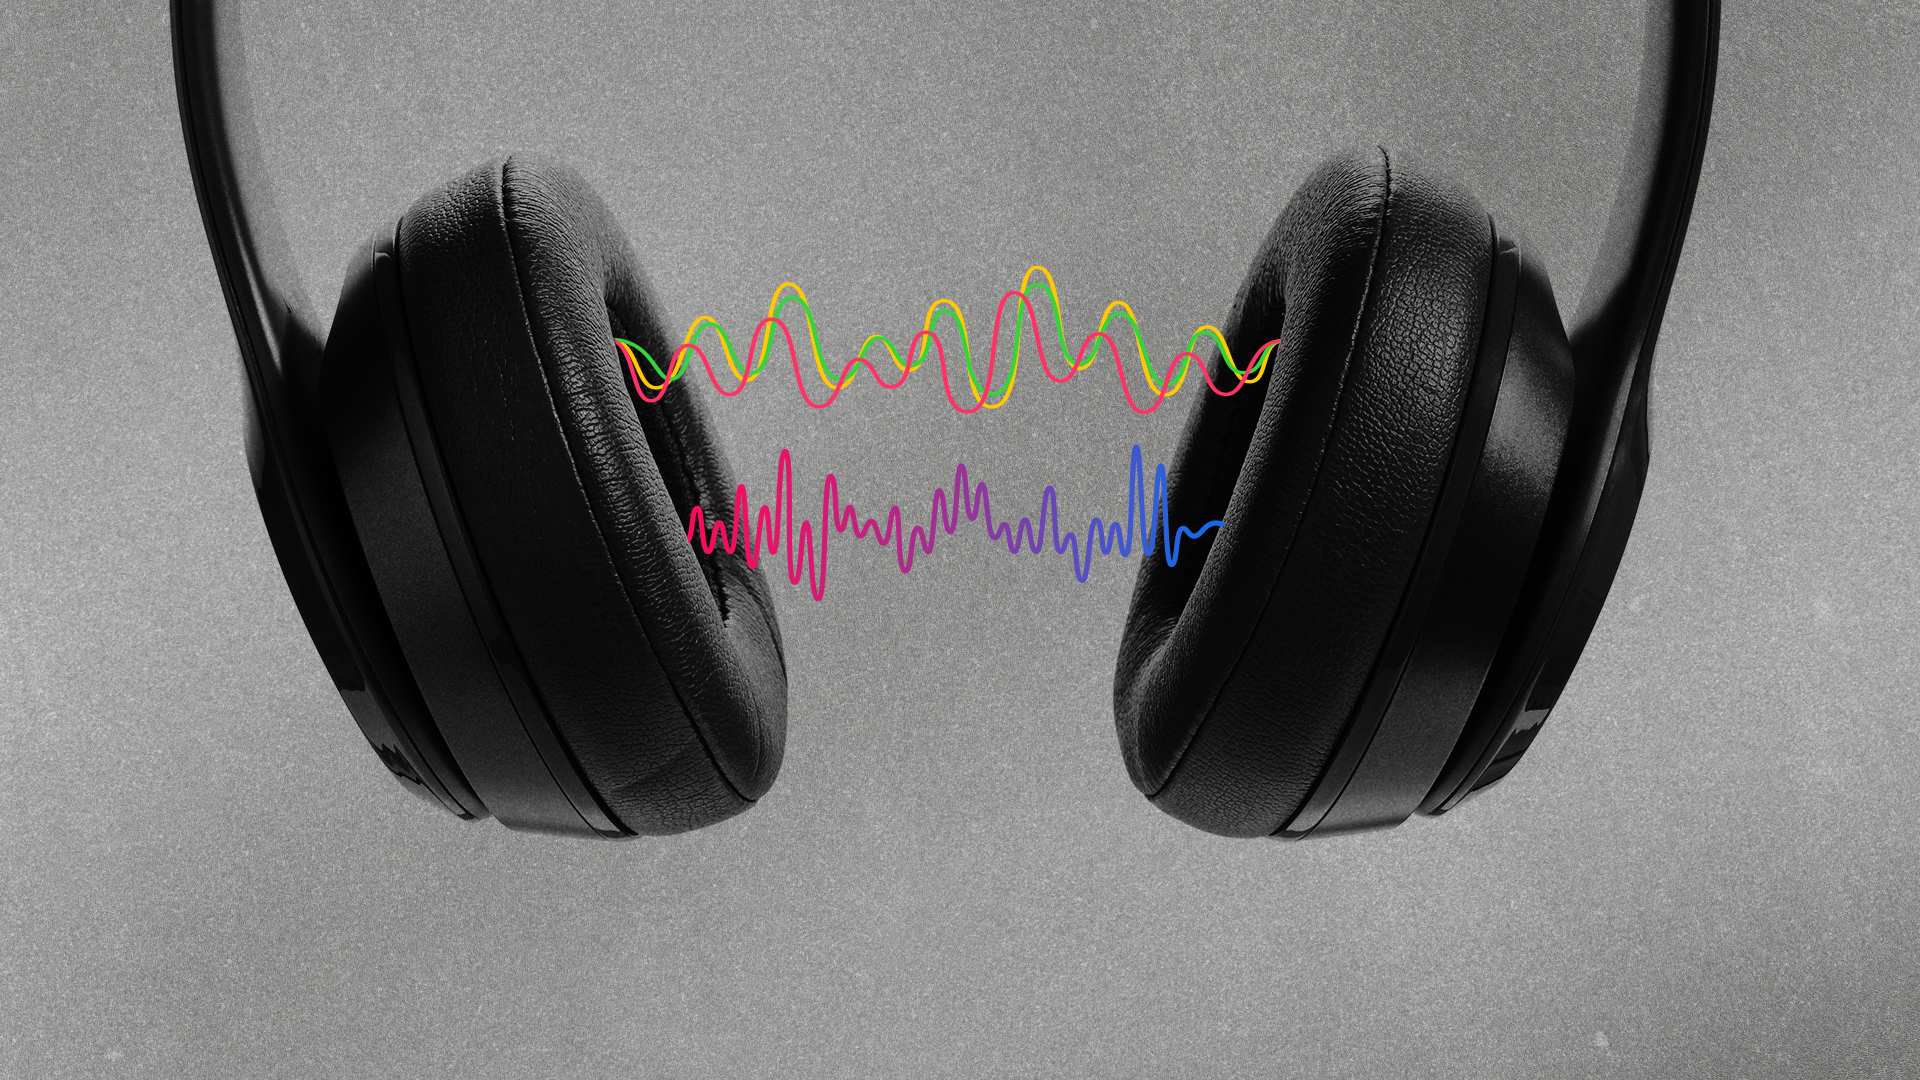 Afinal, os fones de ouvido causam perda auditiva? Saiba agora!